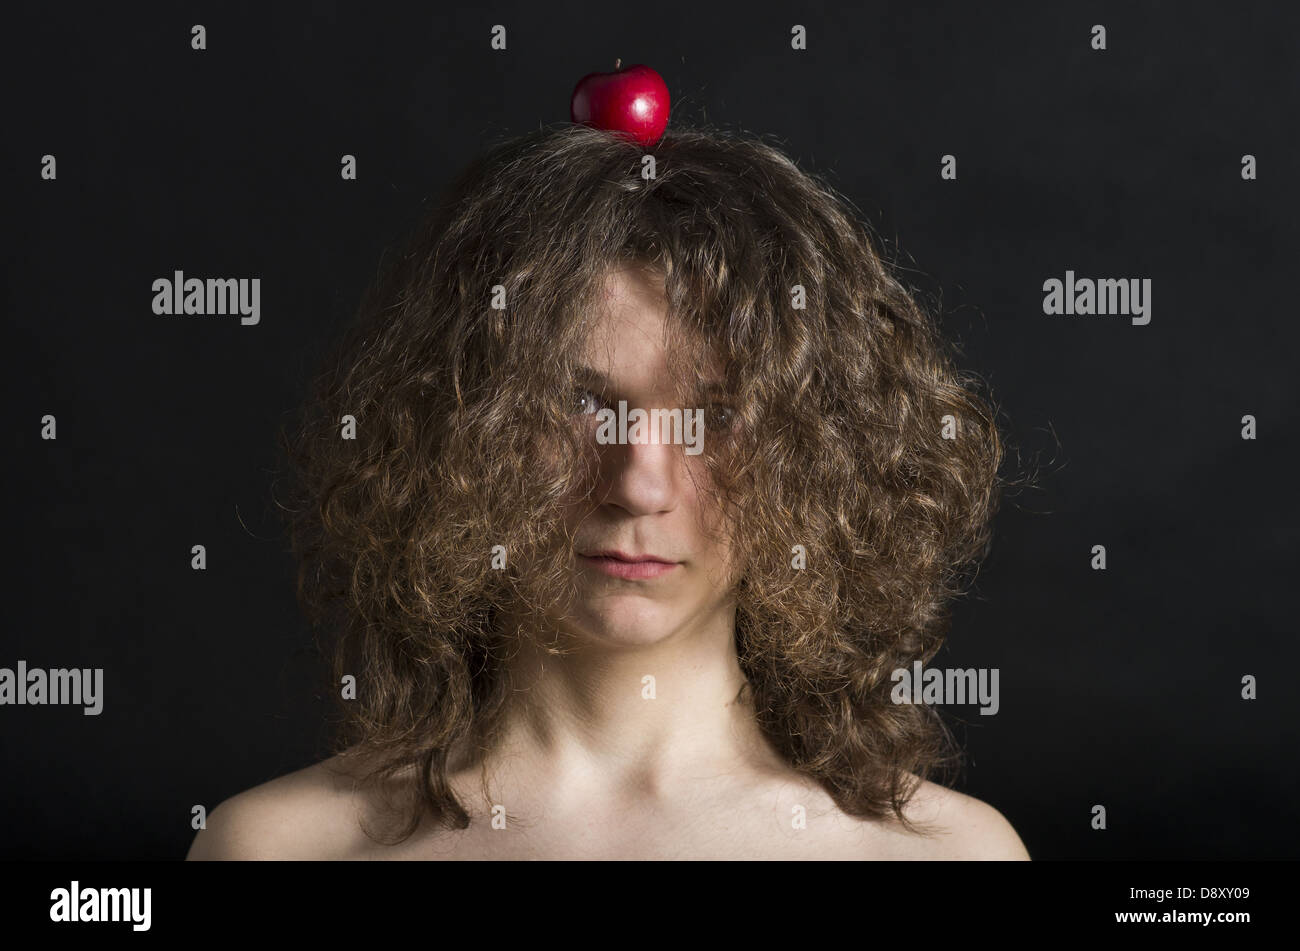 Portrait du garçon avec une pomme sur la tête Banque D'Images